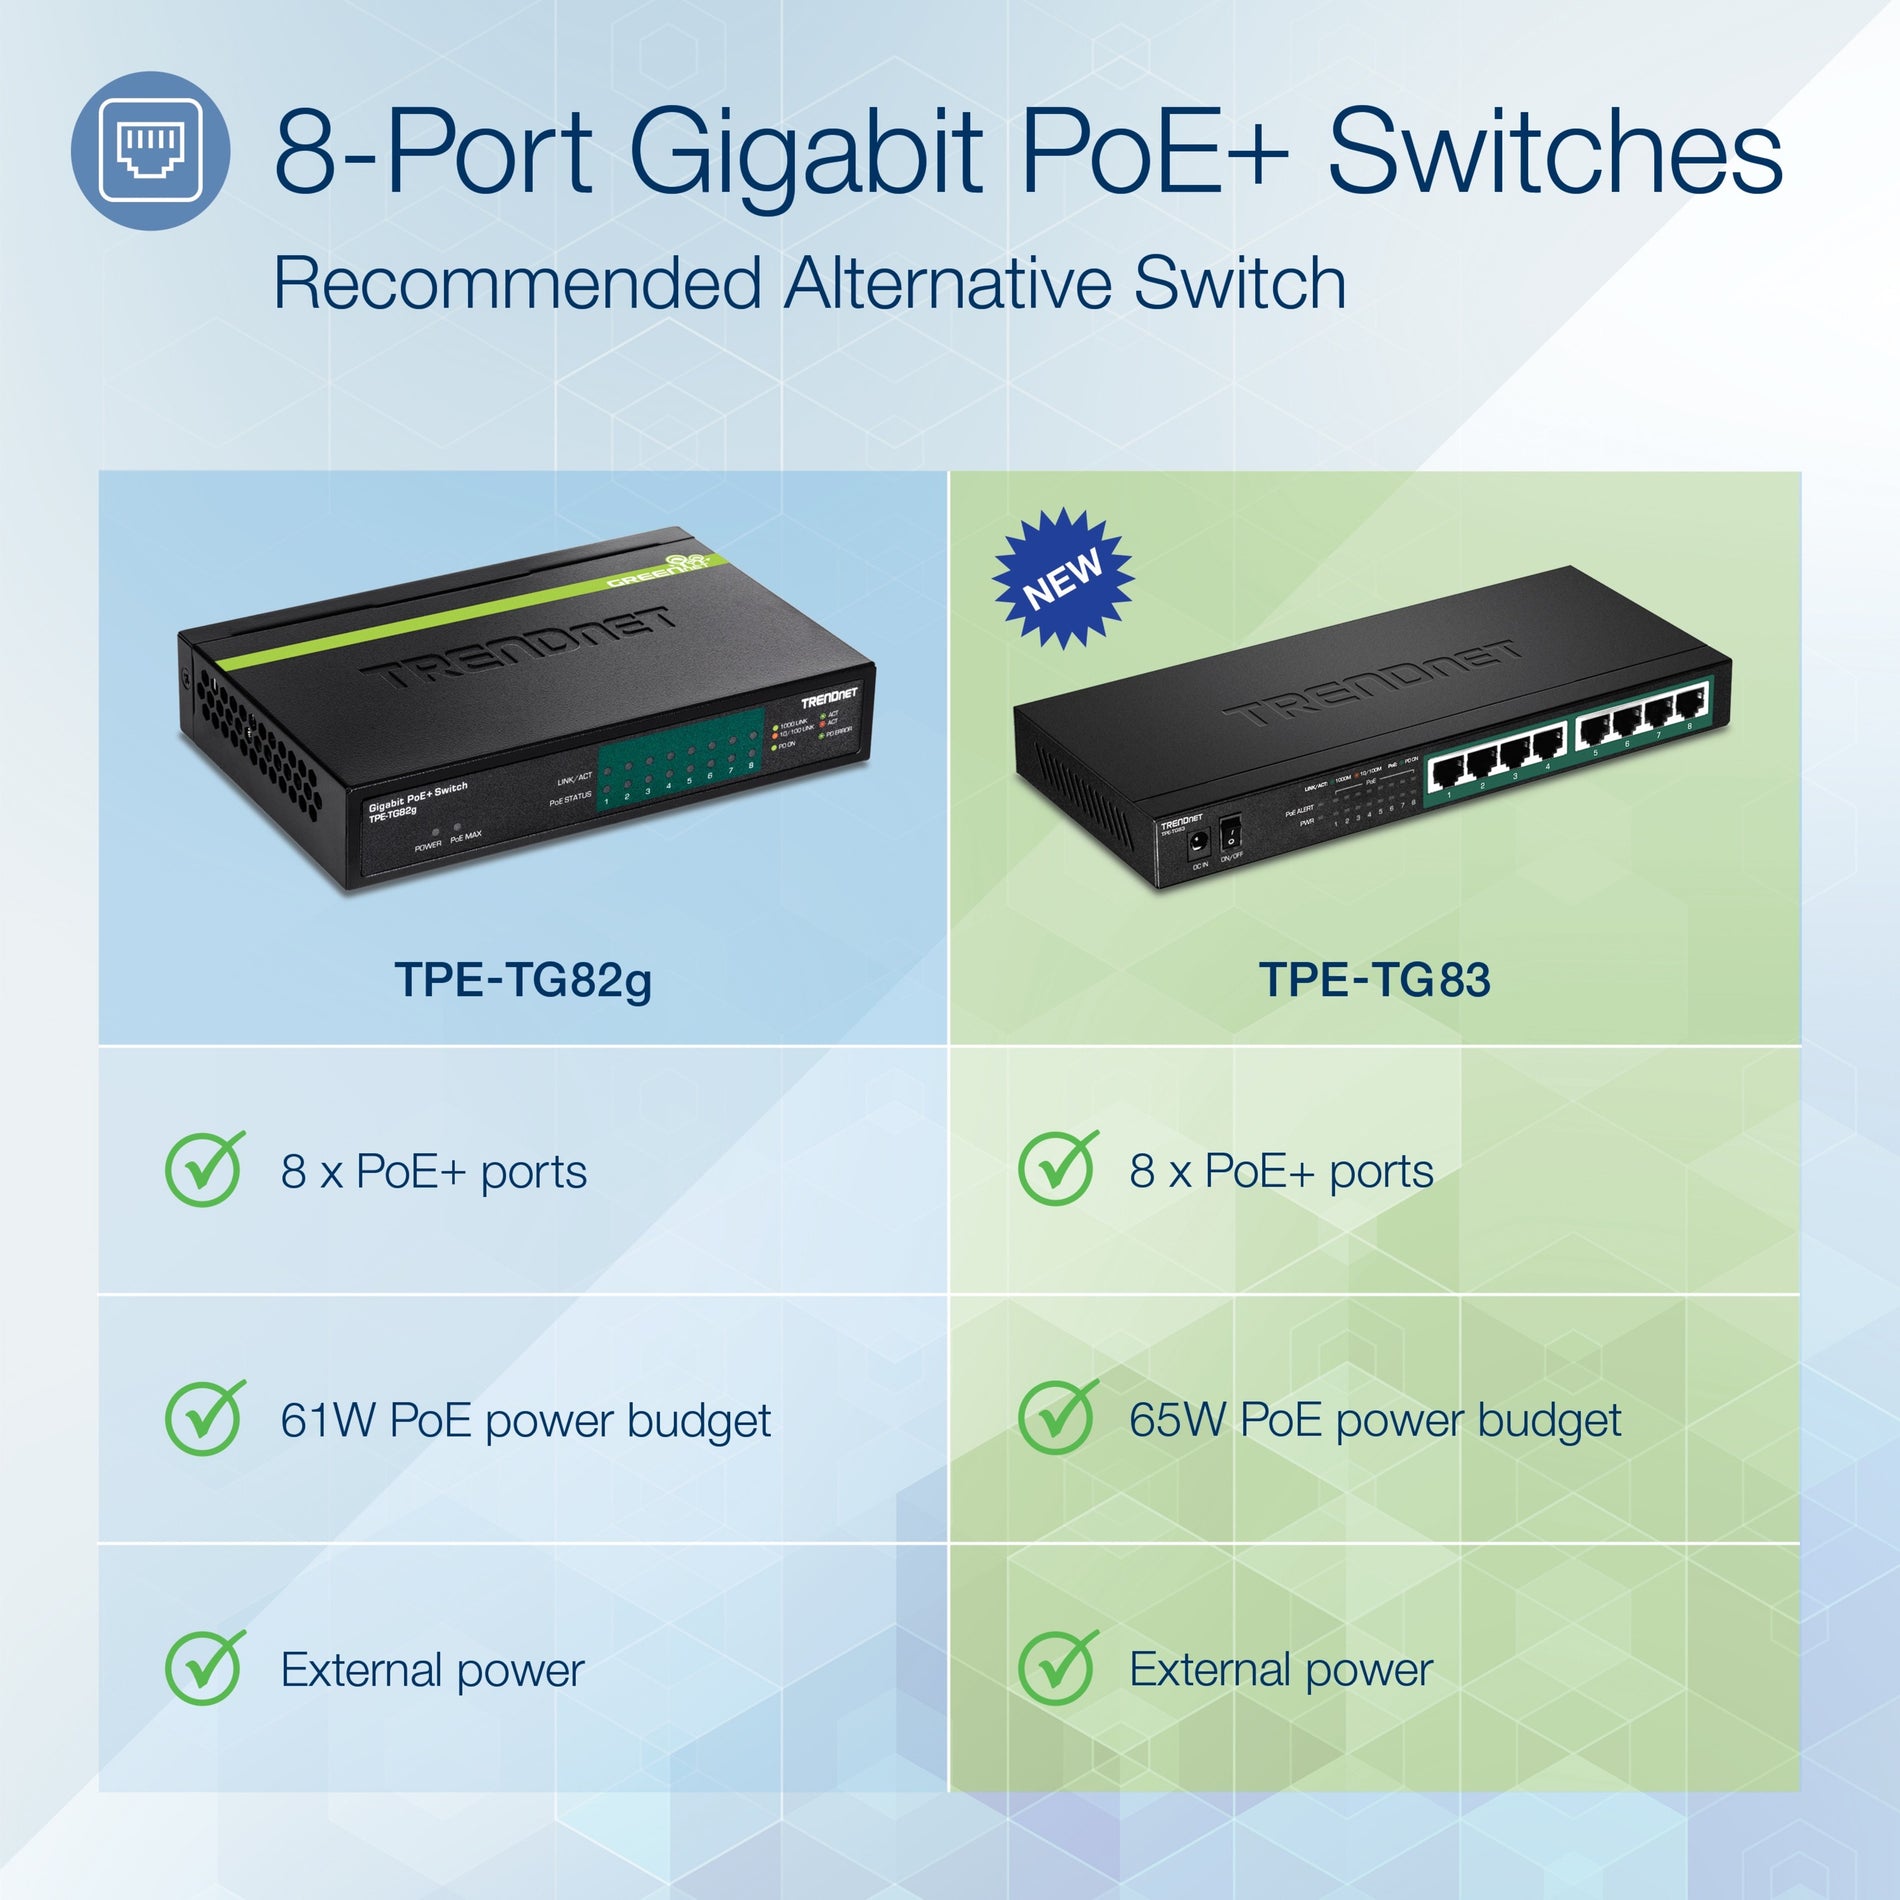 TRENDnet TPE-TG83 8-Port Gigabit PoE+ Switch, TAA Compliant, Lifetime Warranty